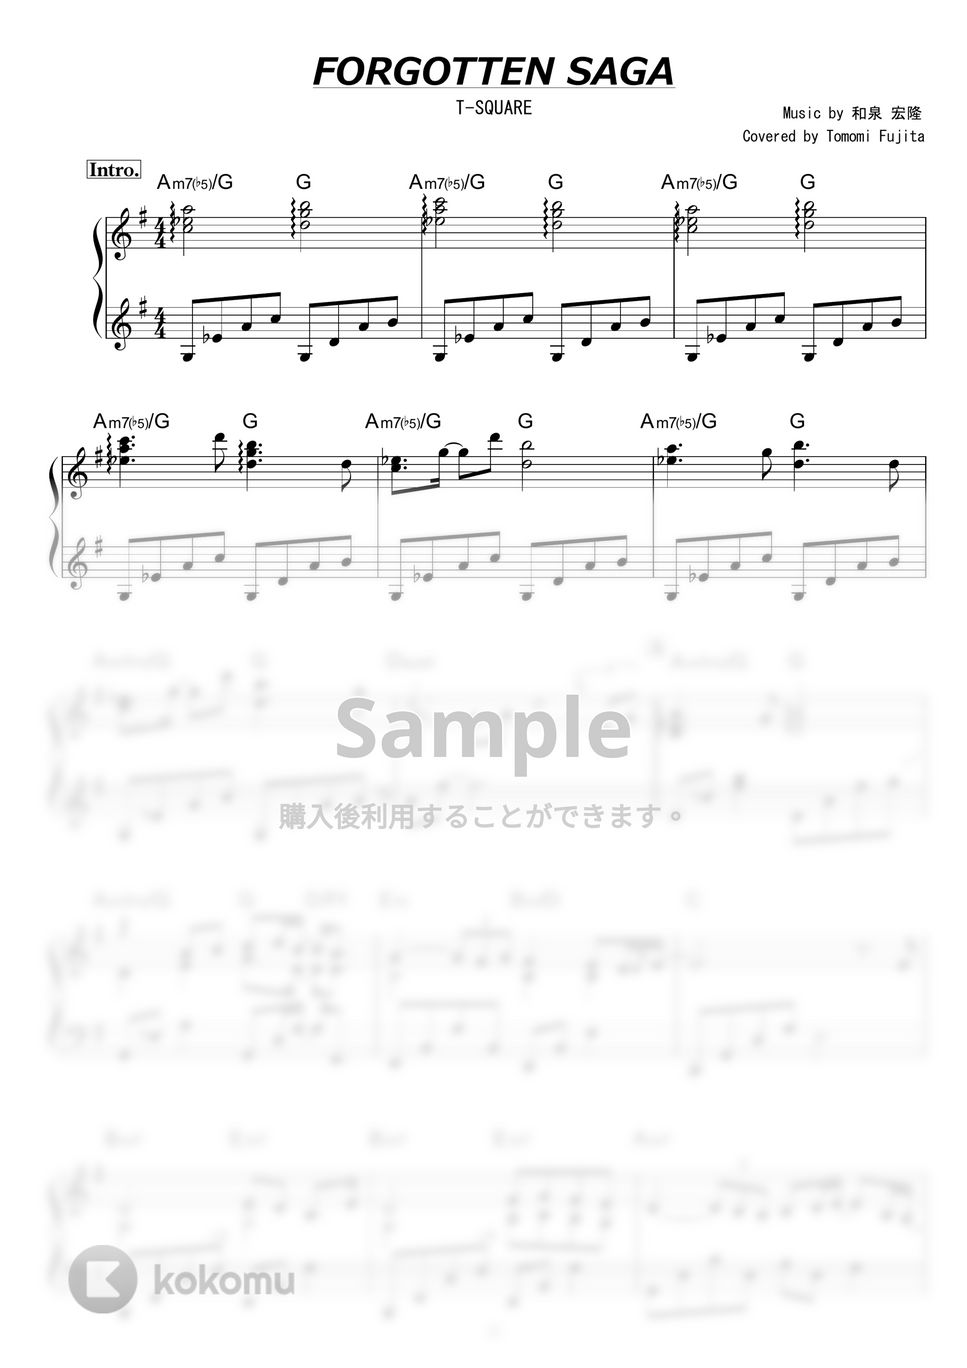 T-SQUARE - Forgotten Saga by piano*score